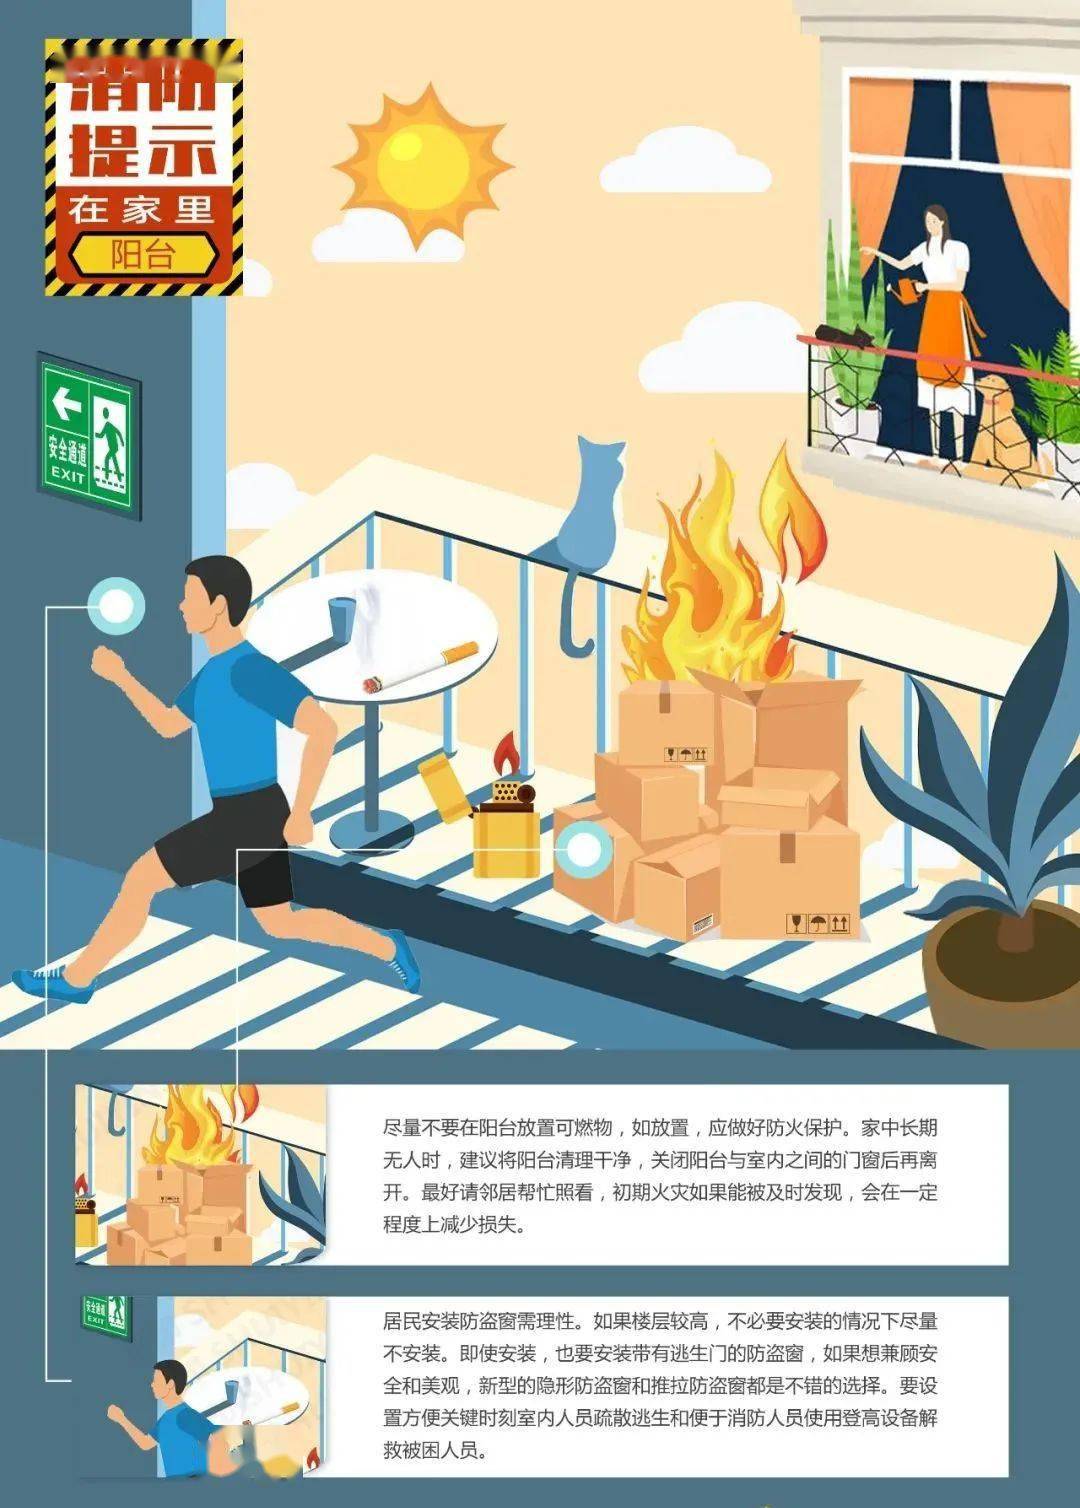 2021辟火指南 | 漫画居家消防安全,大家一起来"找茬"!